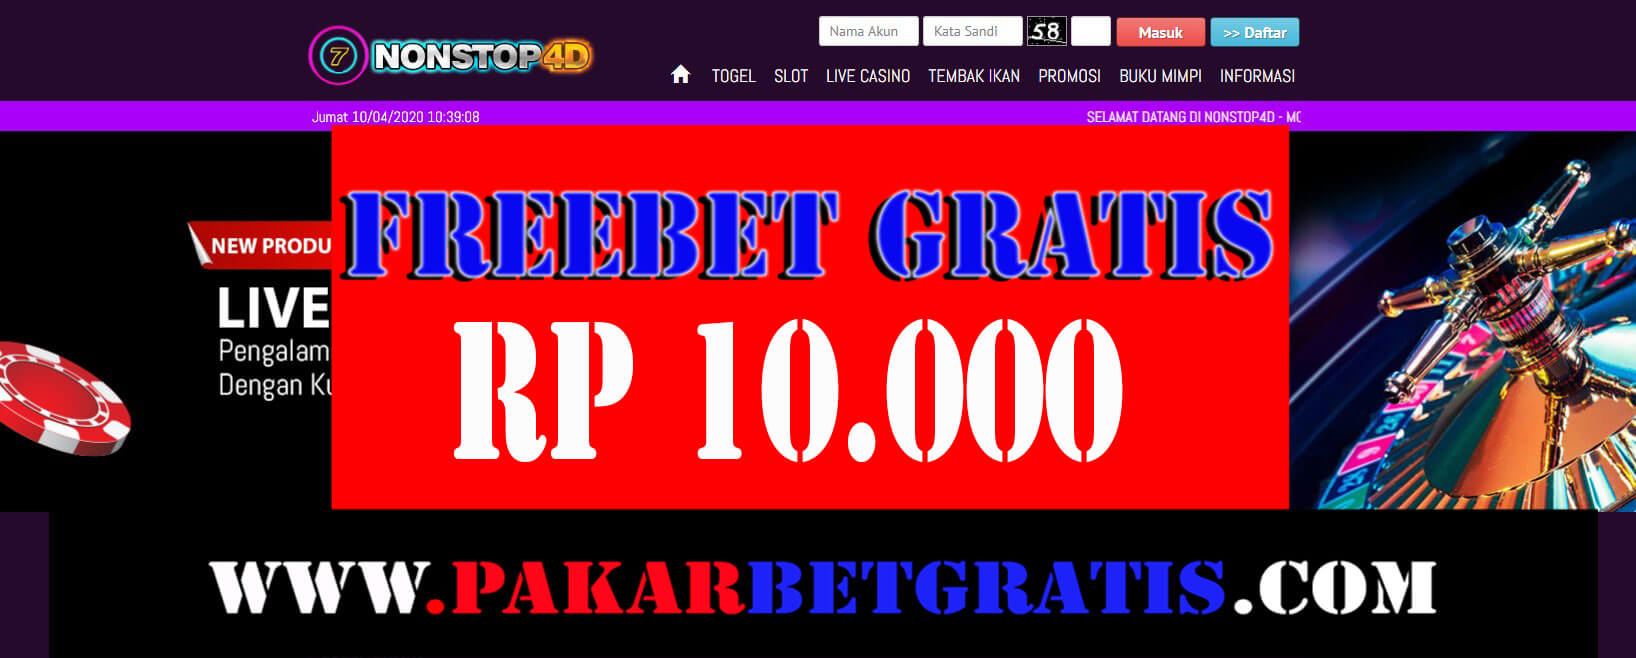 Nonstop4d Freebet gratis Rp 10.000 tanpa deposit